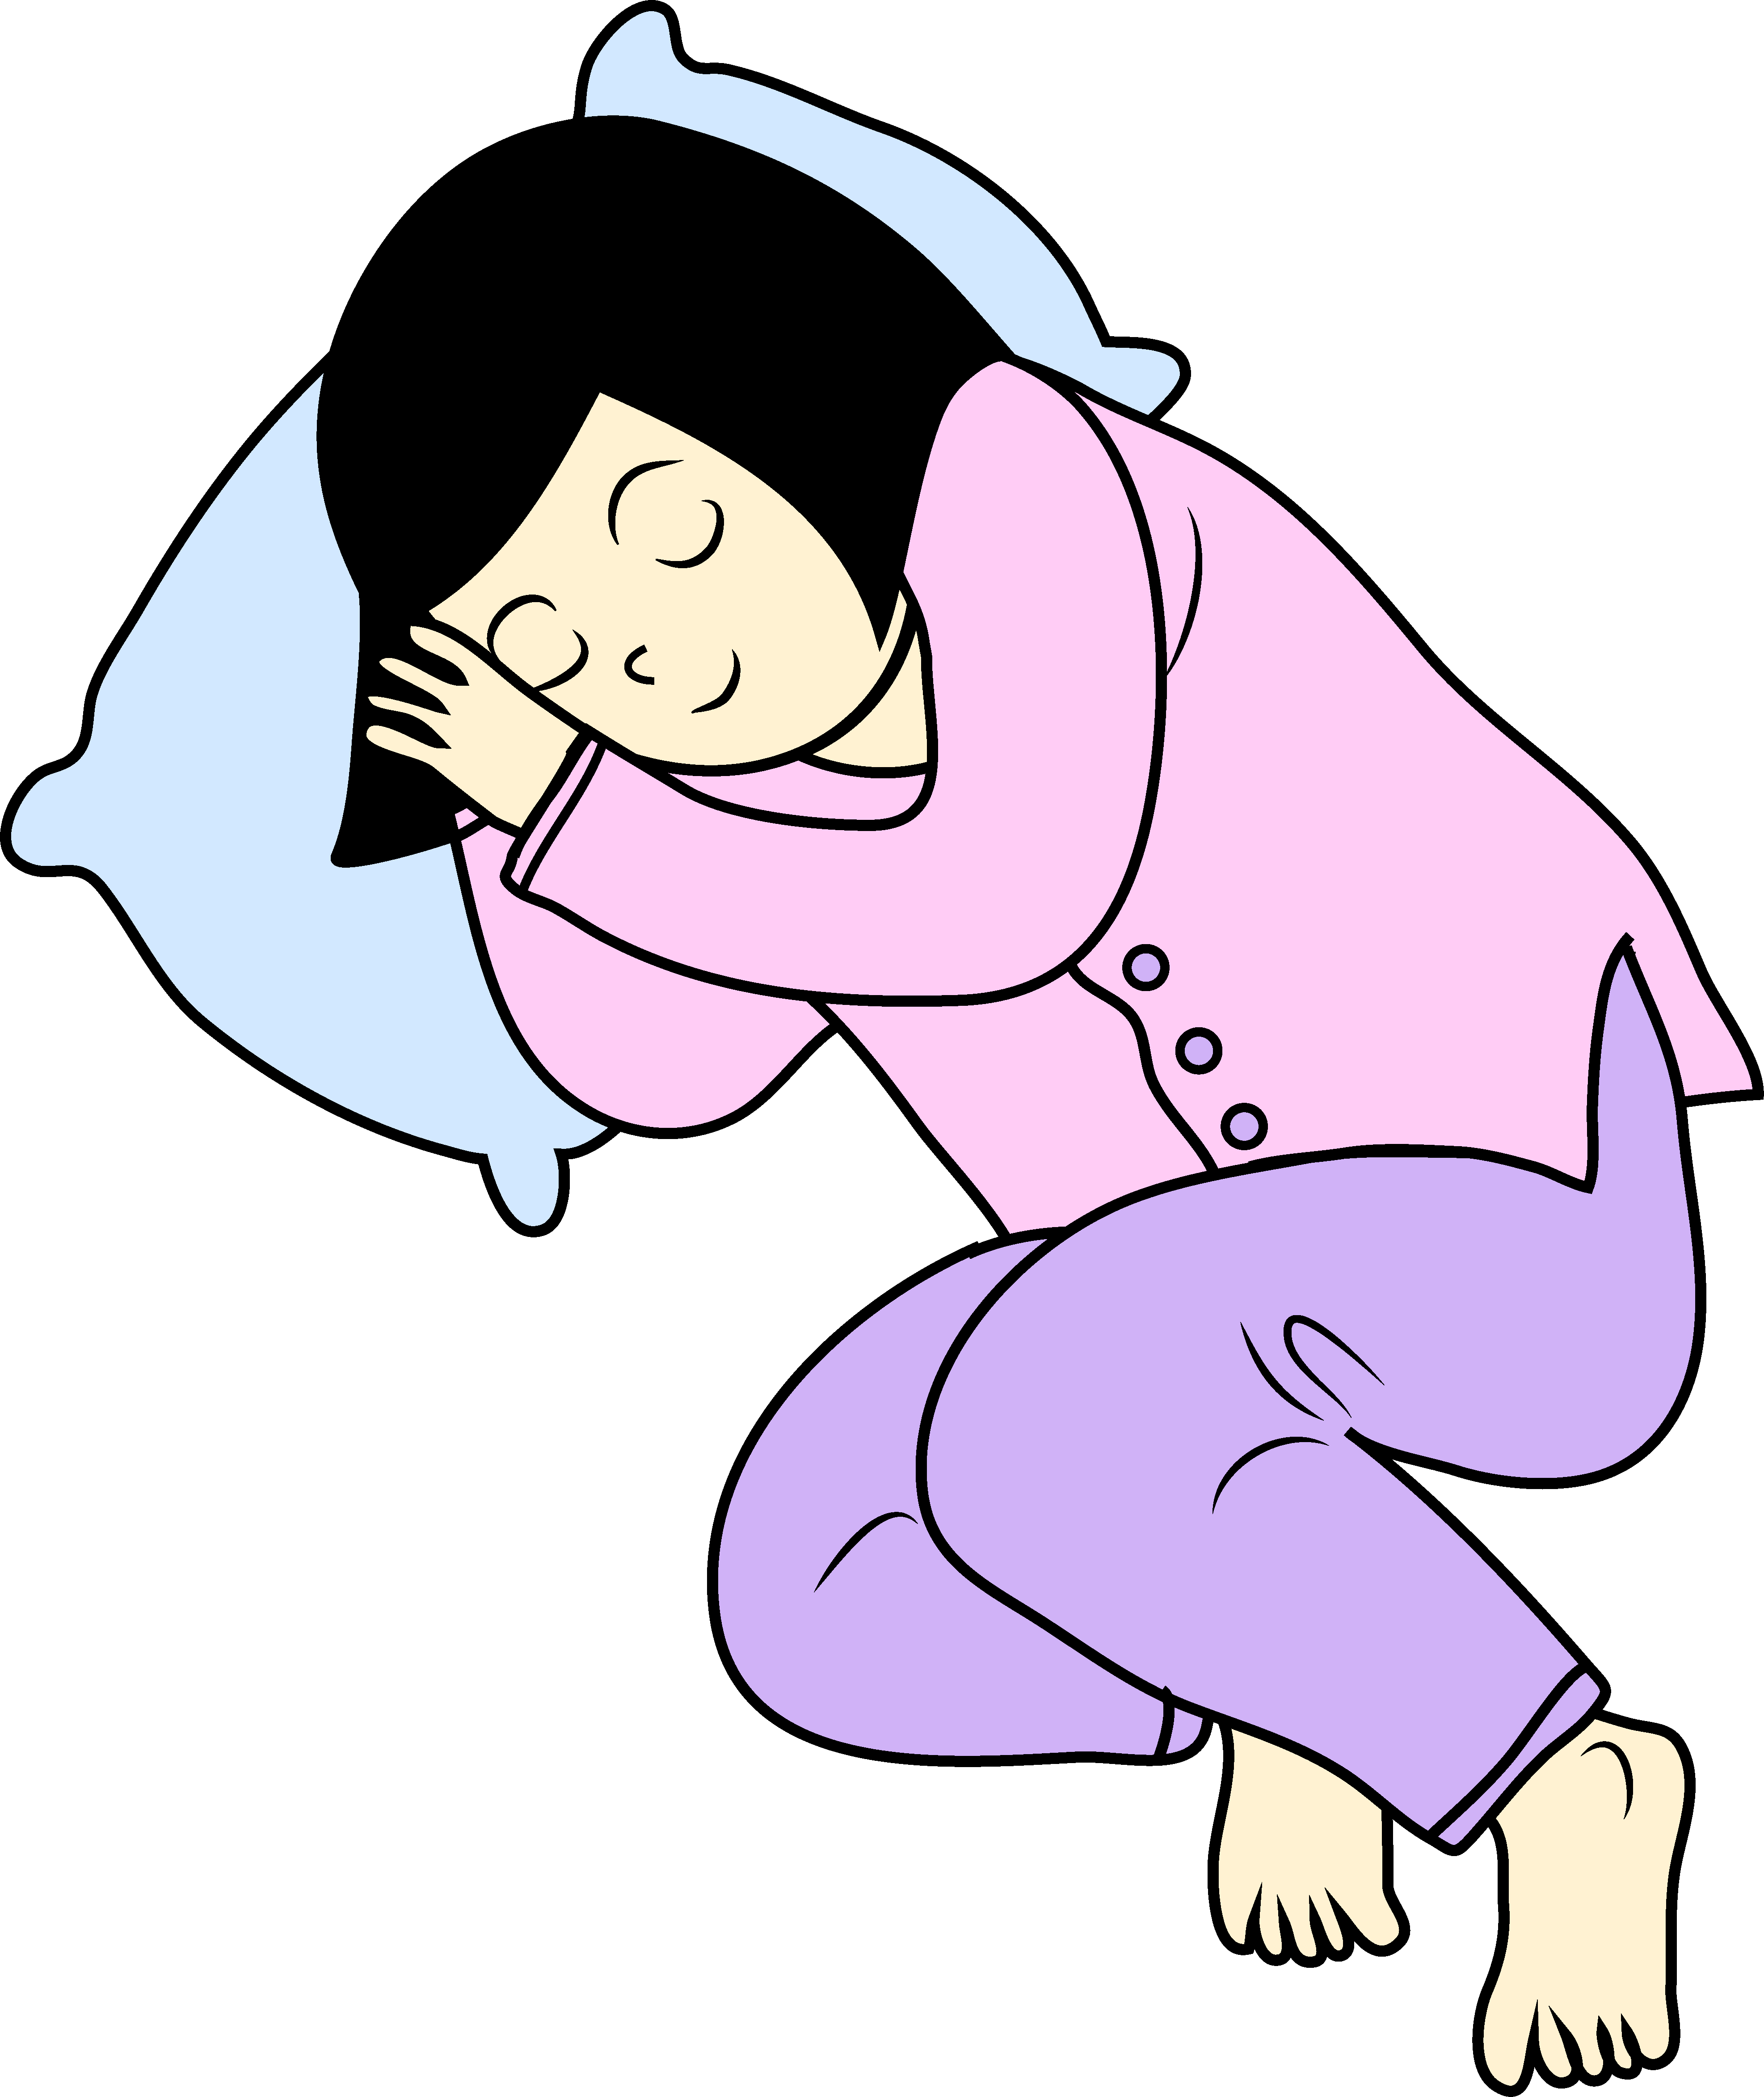 sleep 32+ Sleepy Person Cartoon Gif